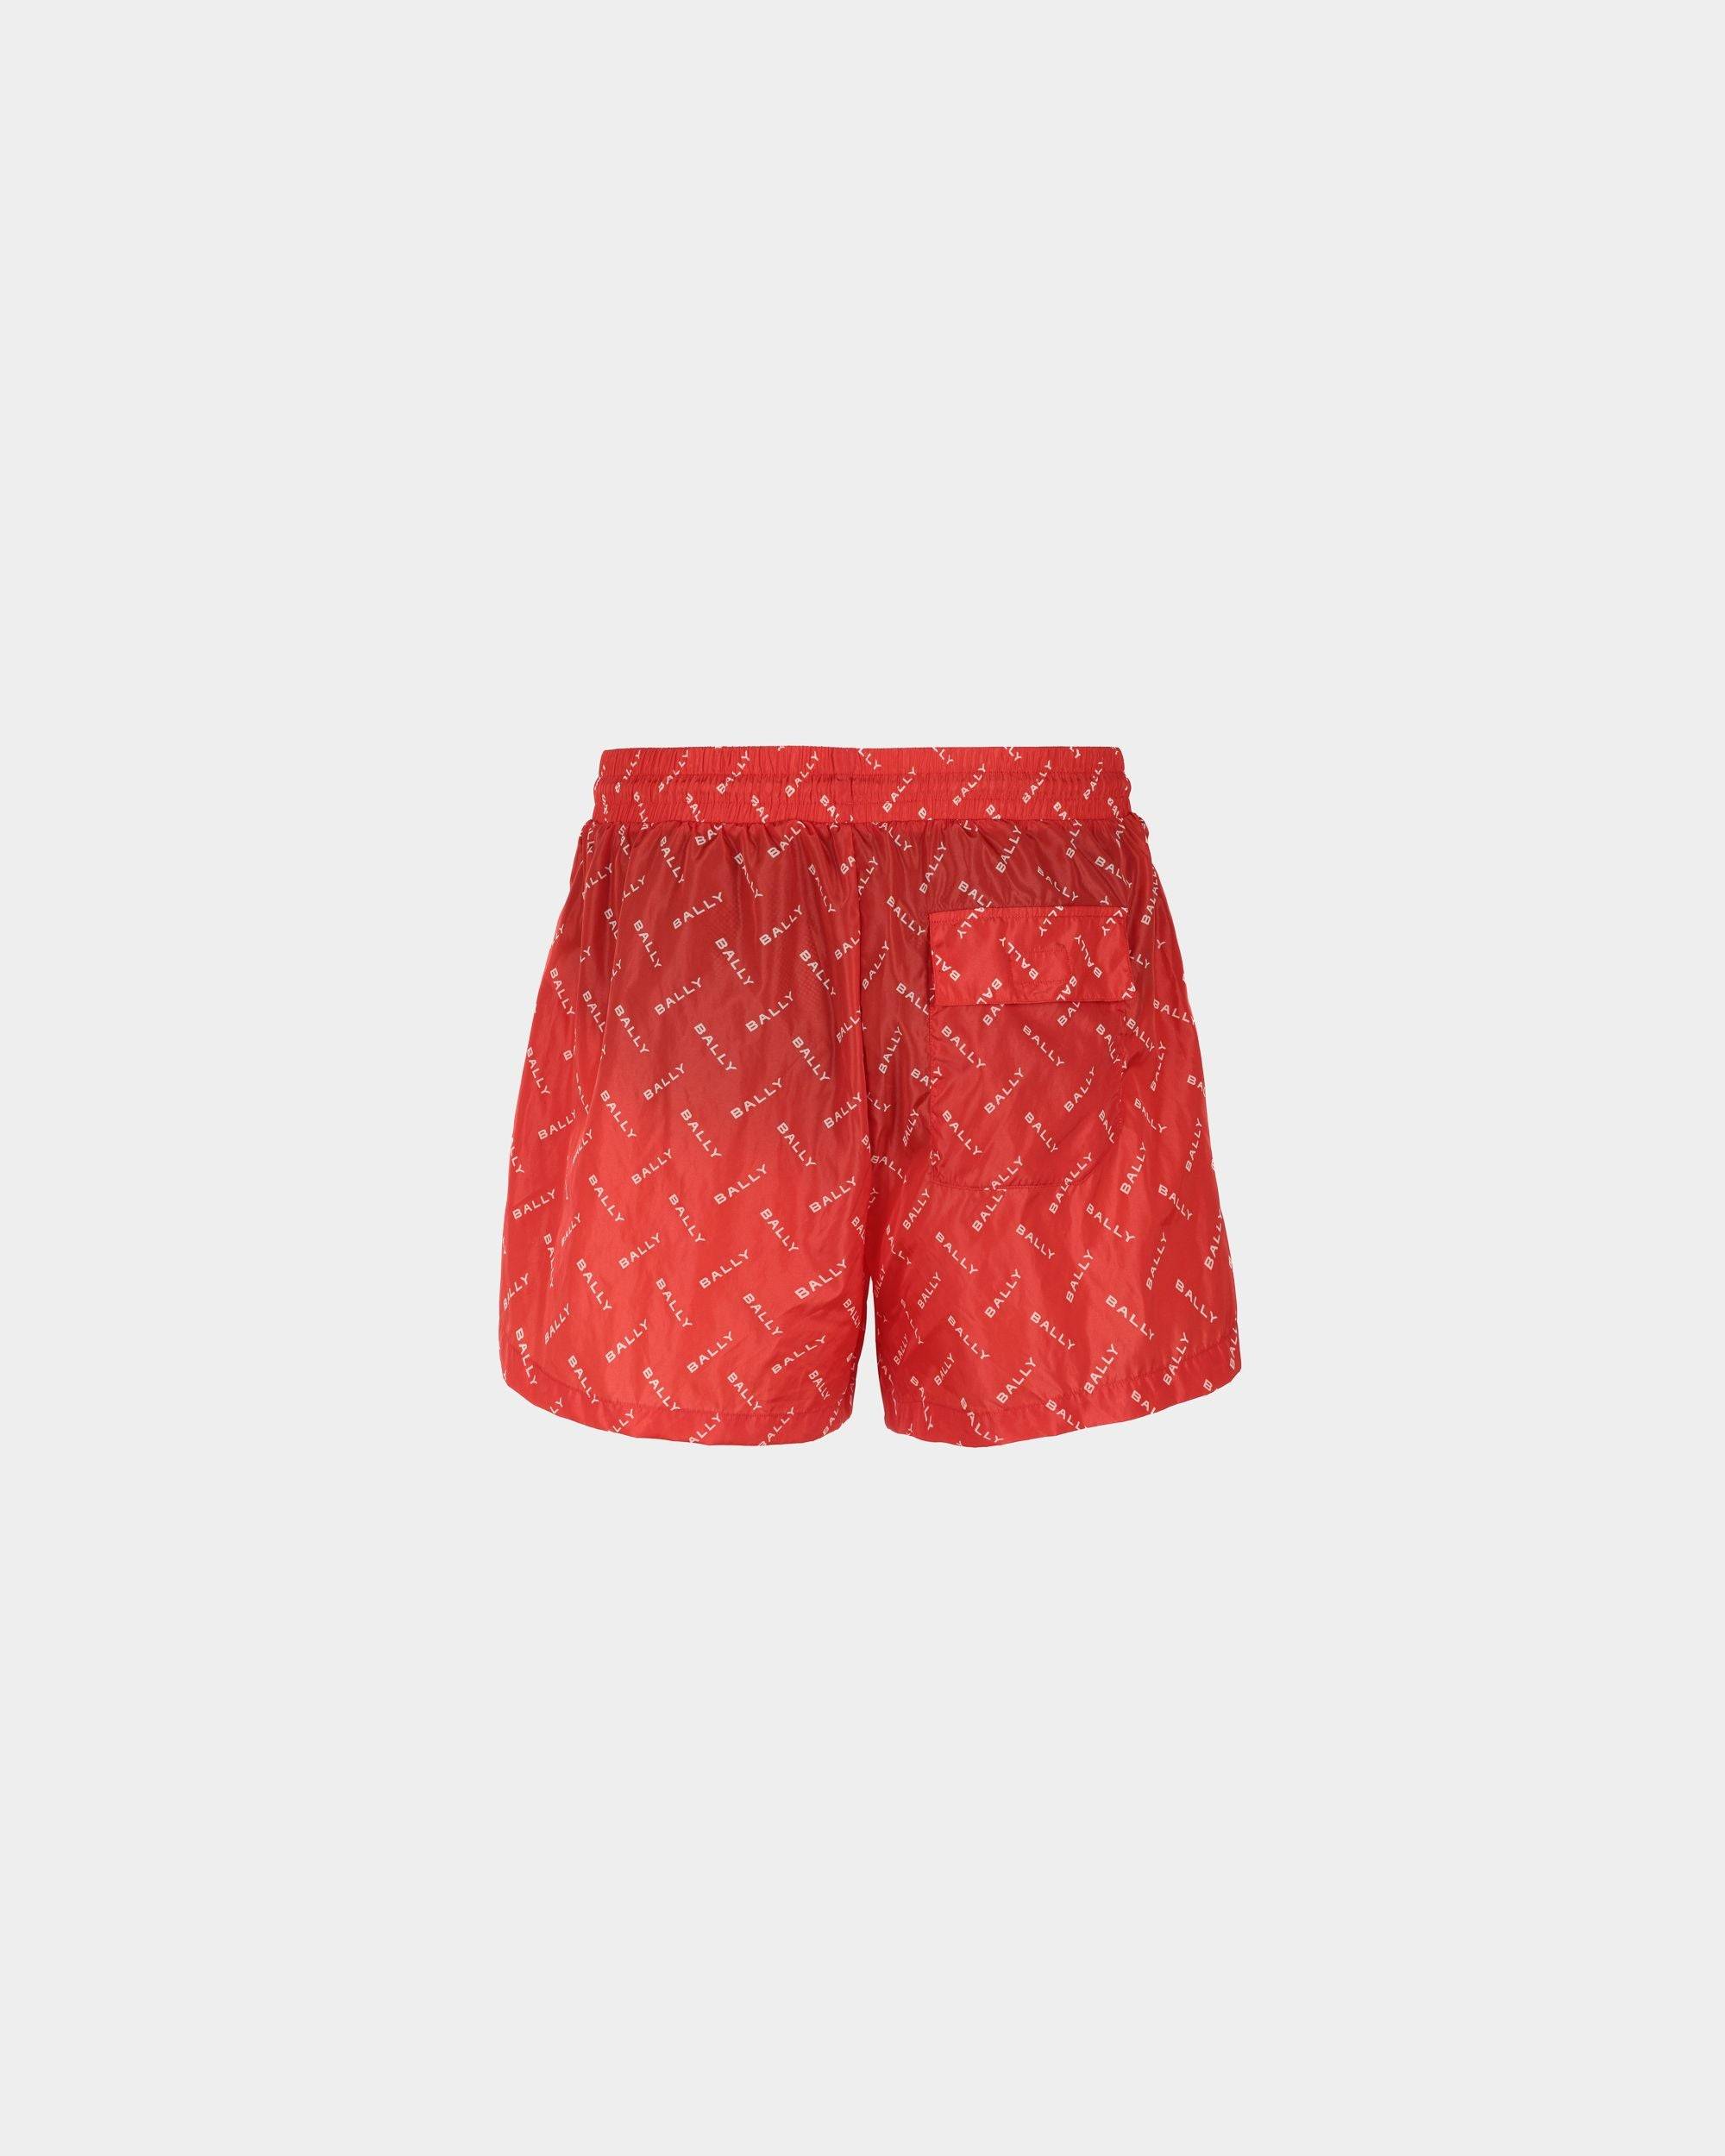 Men's Swim Trunks in Red Fabric| Bally | Still Life Back